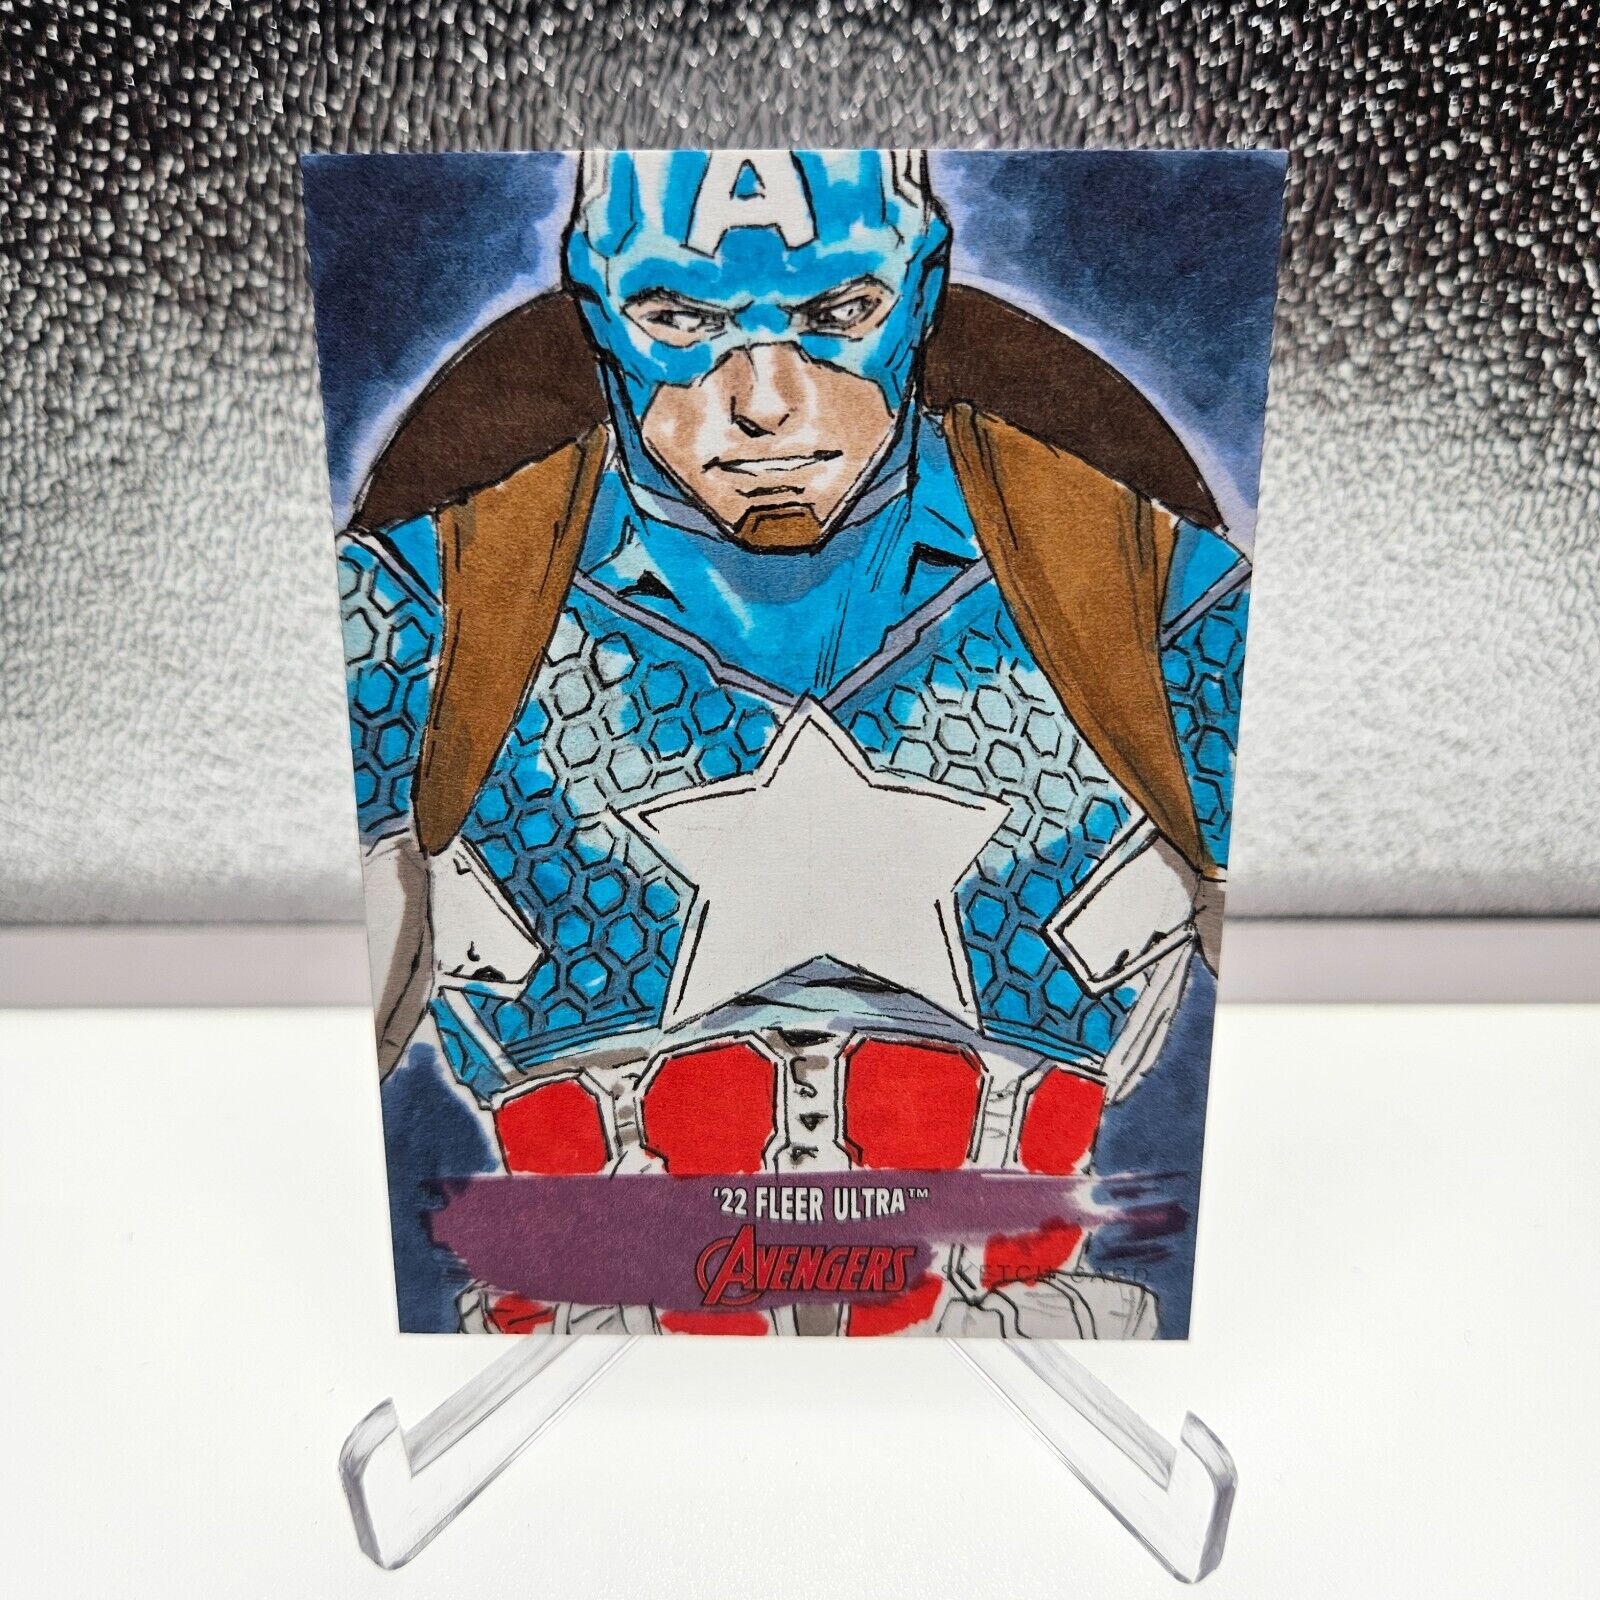 2022 Fleer Ultra Avengers Captain America Sketch Card 1/1 - Artist Signed